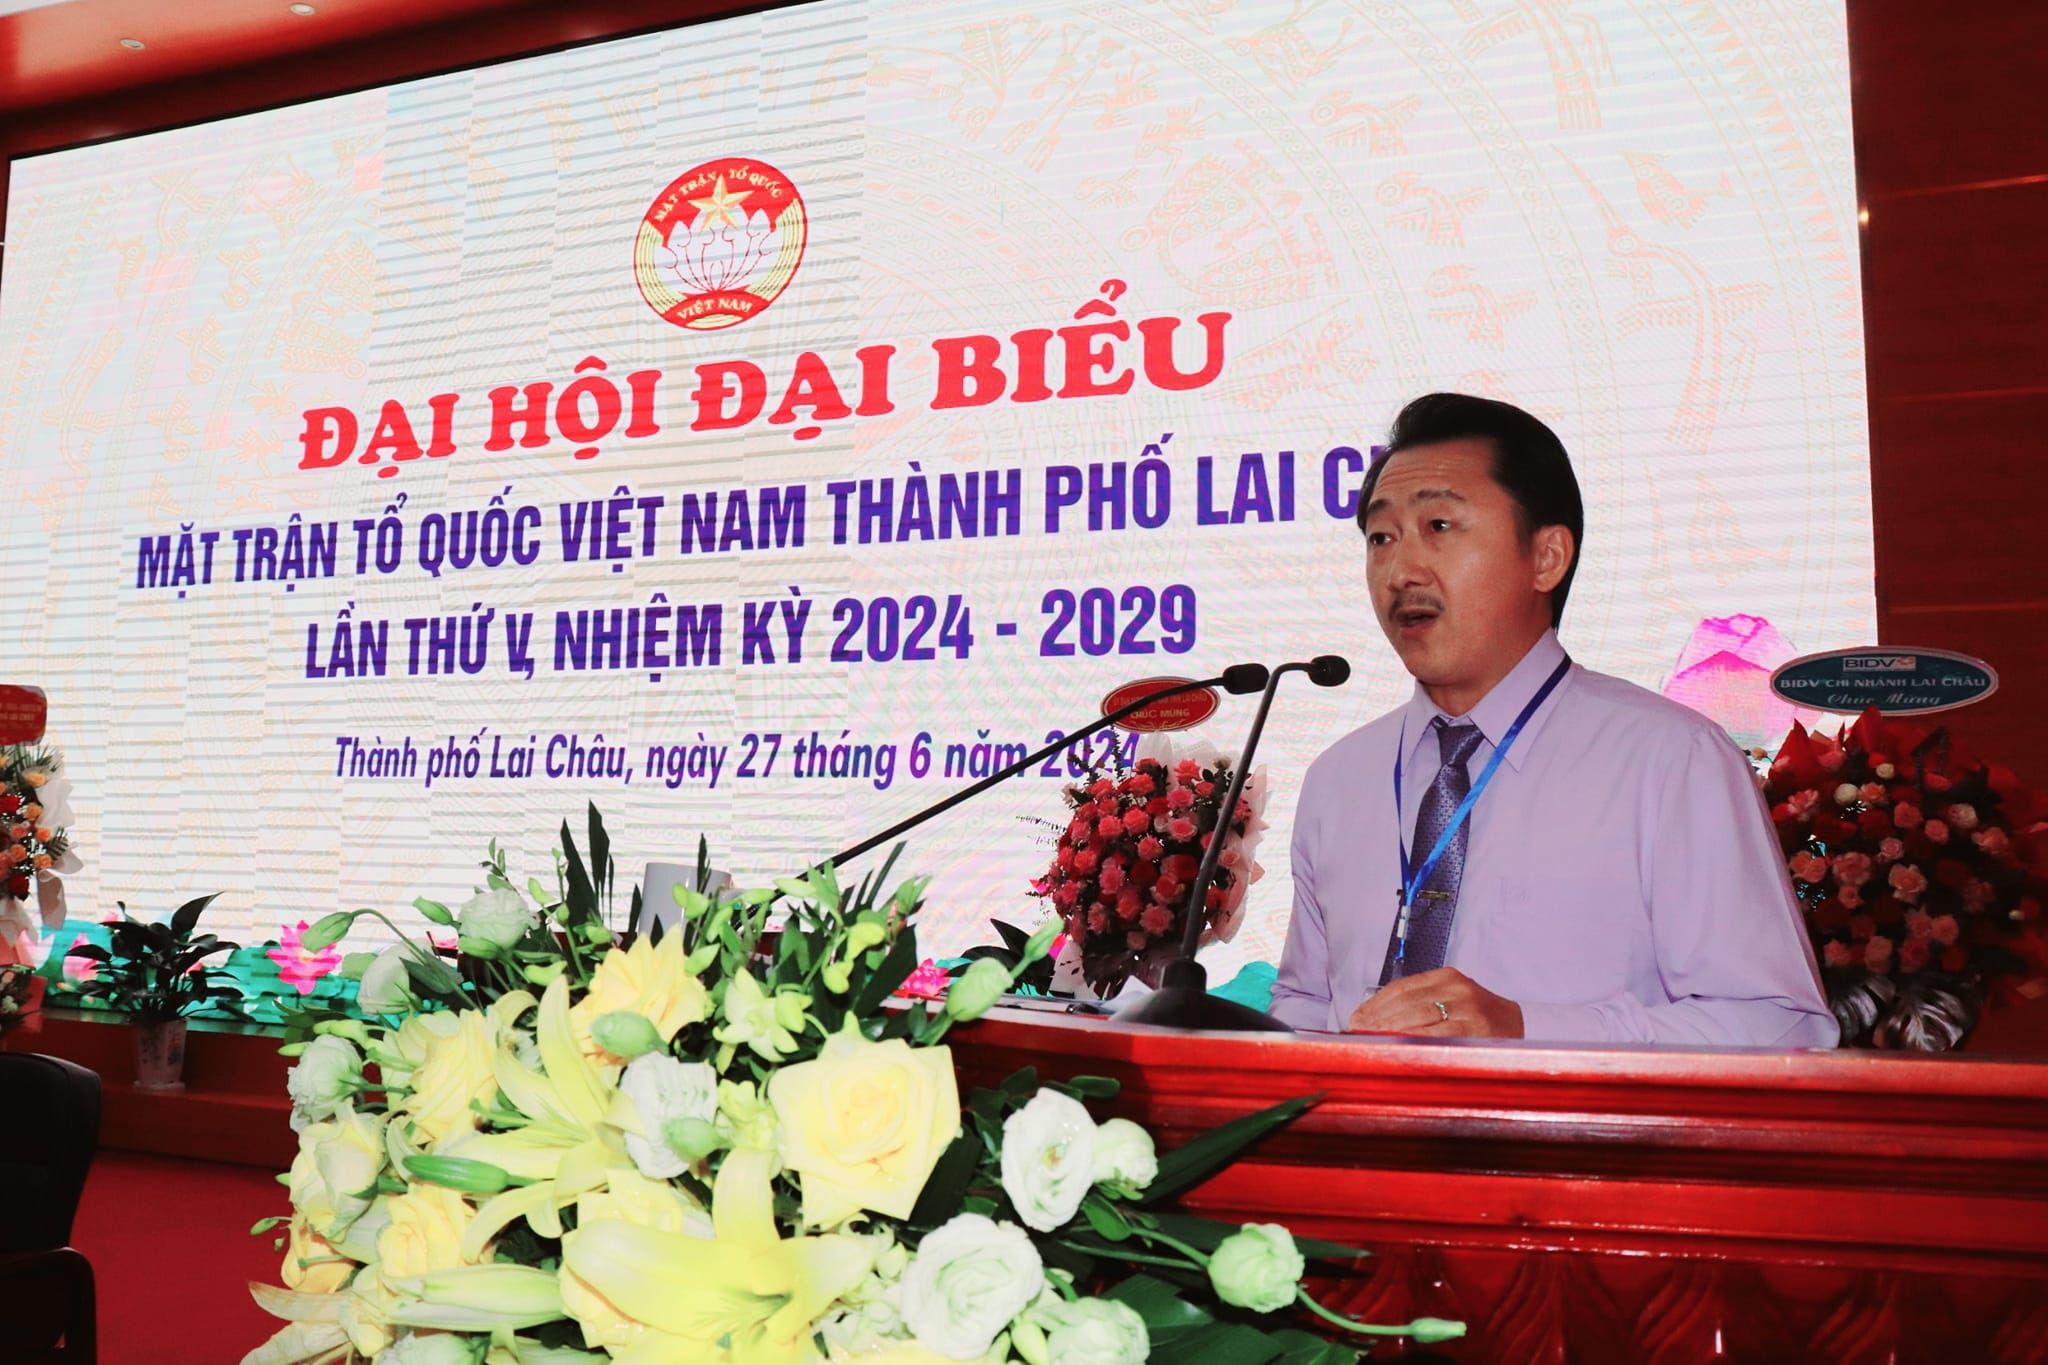 Đại hội Đại biểu Mặt trận Tổ quốc Việt Nam tỉnh Lai Châu sẽ diễn ra từ ngày 23 - 24/7/2024